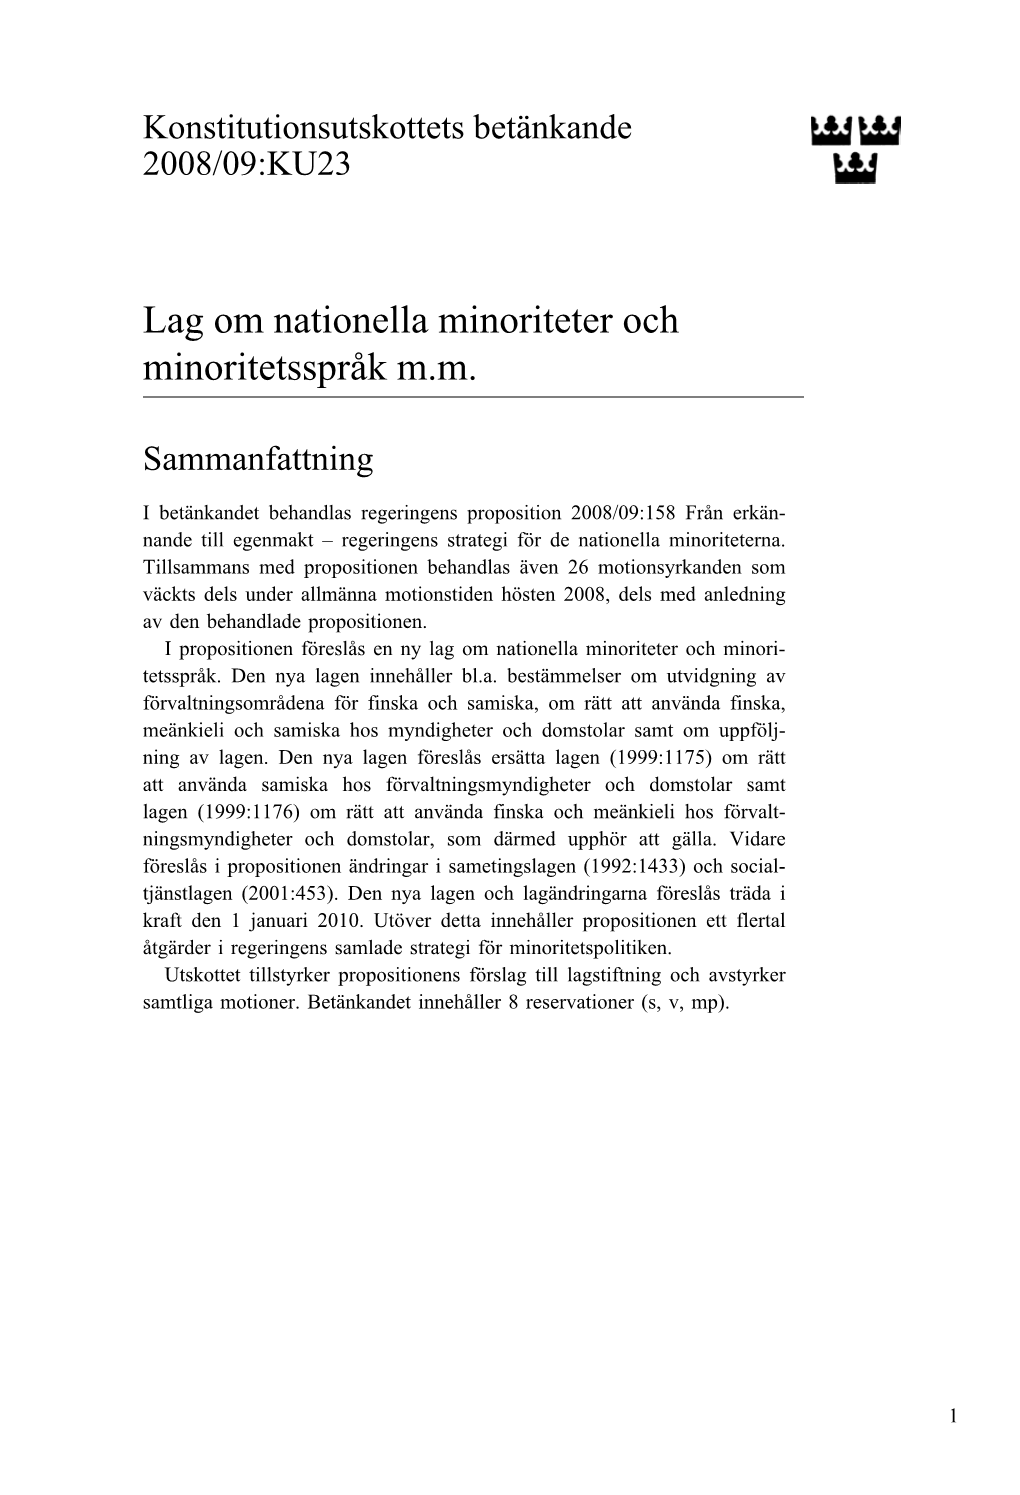 Bet. 2008/09:KU23 Lag Om Nationella Minoriteter Och